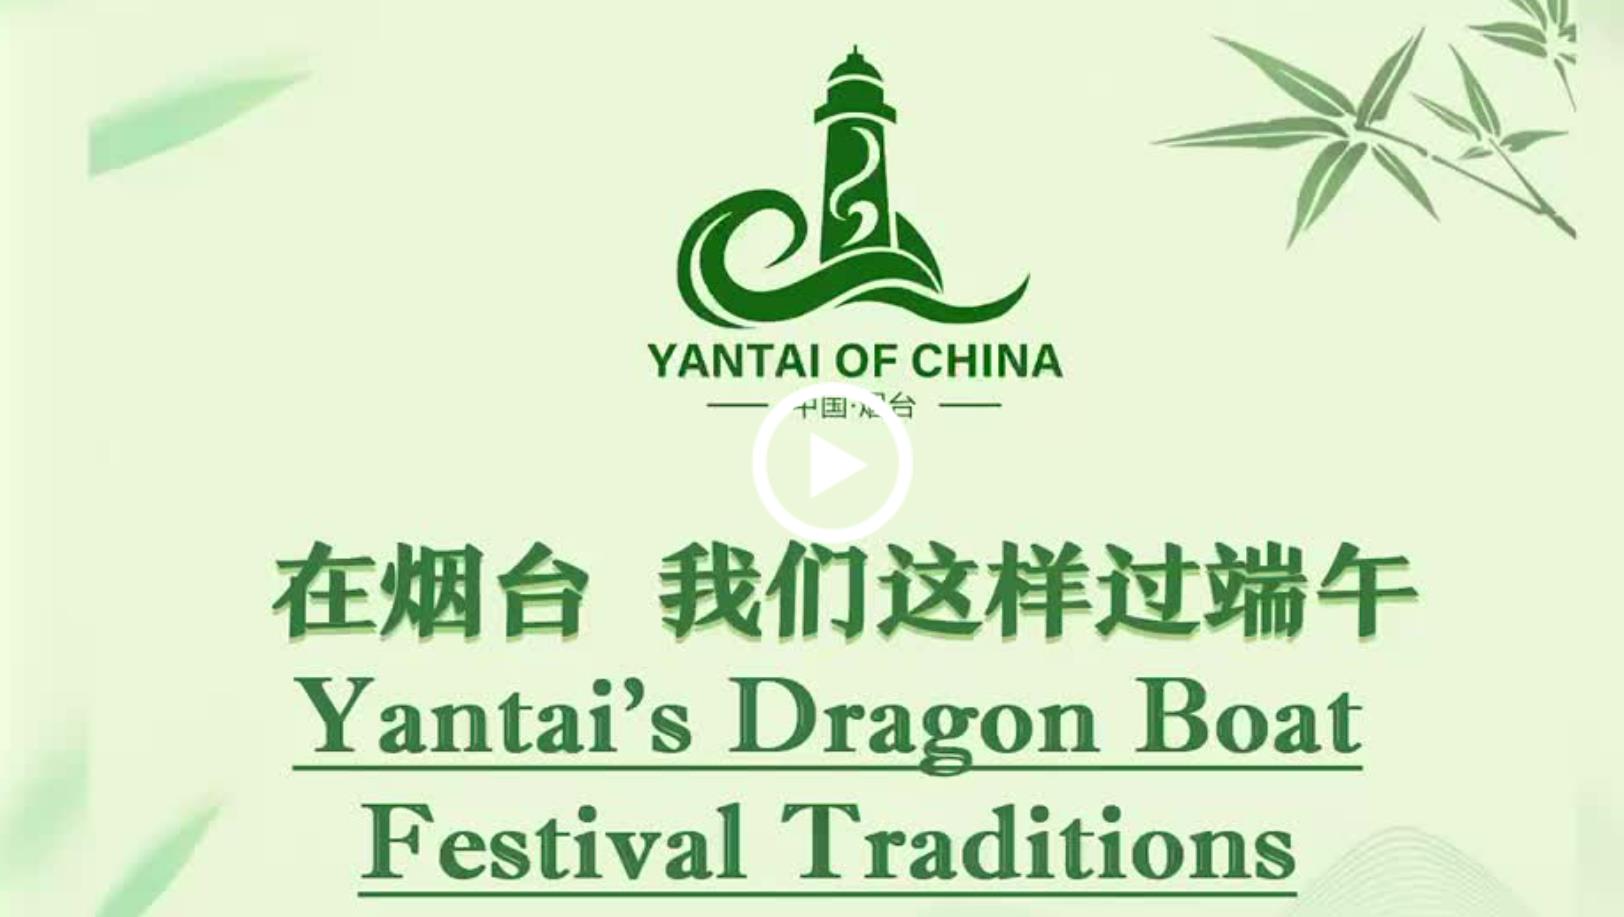 Video: Discover Dragon Boat Festival traditions in Yantai